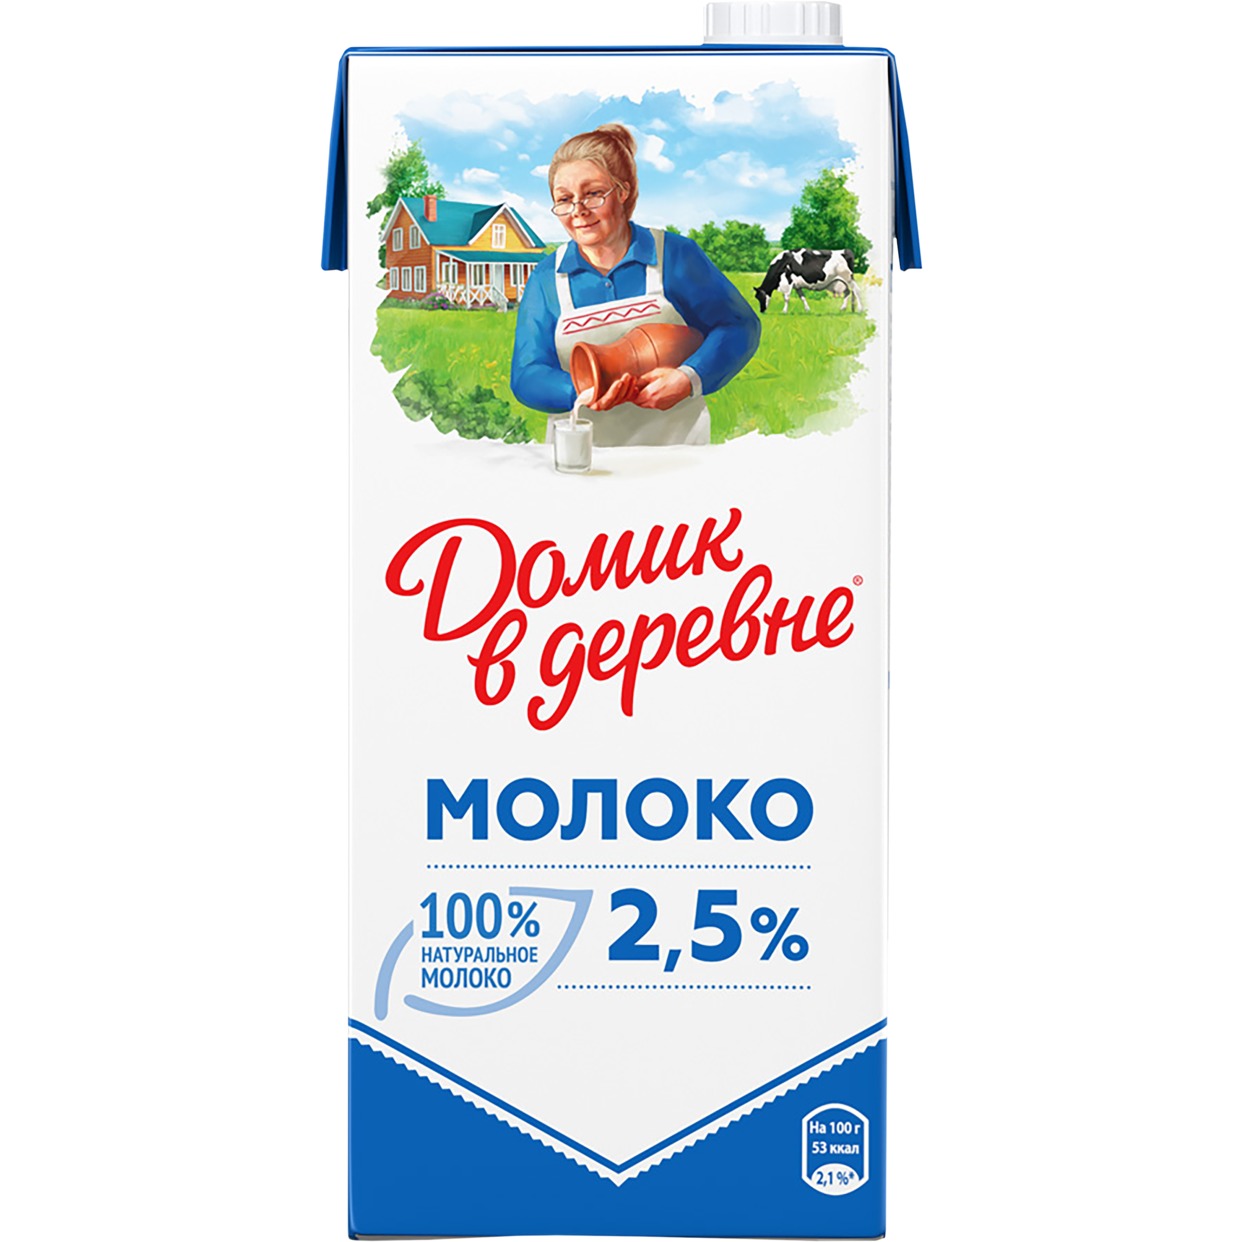 Молоко Домик в деревне ультрапастеризованное 2,5% 925 мл по акции в Пятерочке